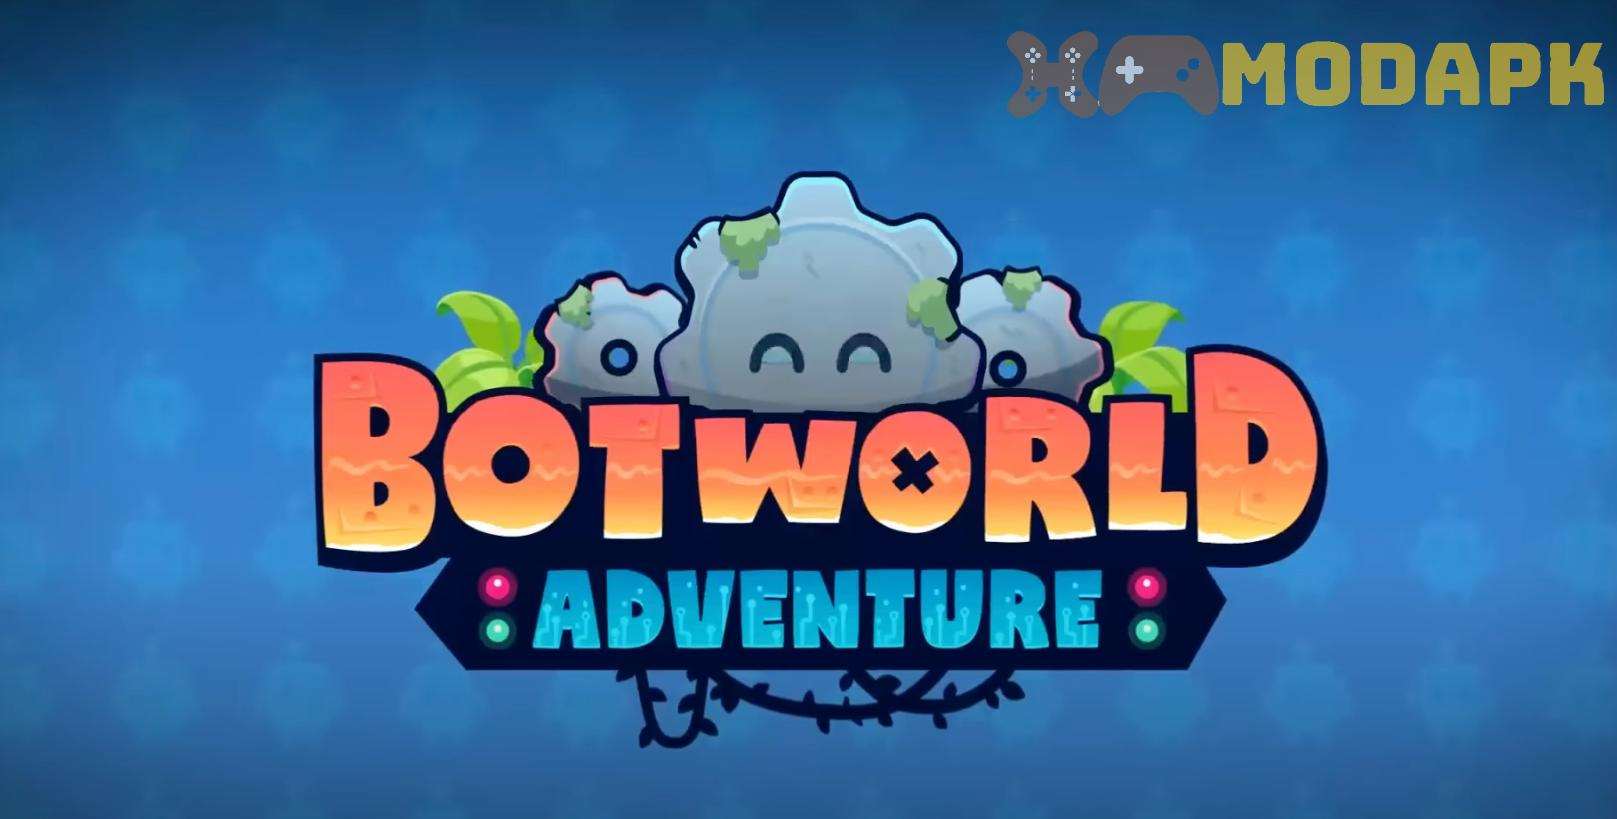 Hack Botworld Adventure MOD (Menu Pro, Tiền Full, Tiếng Việt, Thiệt Hại Lớn, Bất Tử, Giao Dịch 0 Đồng) APK 1.22.5